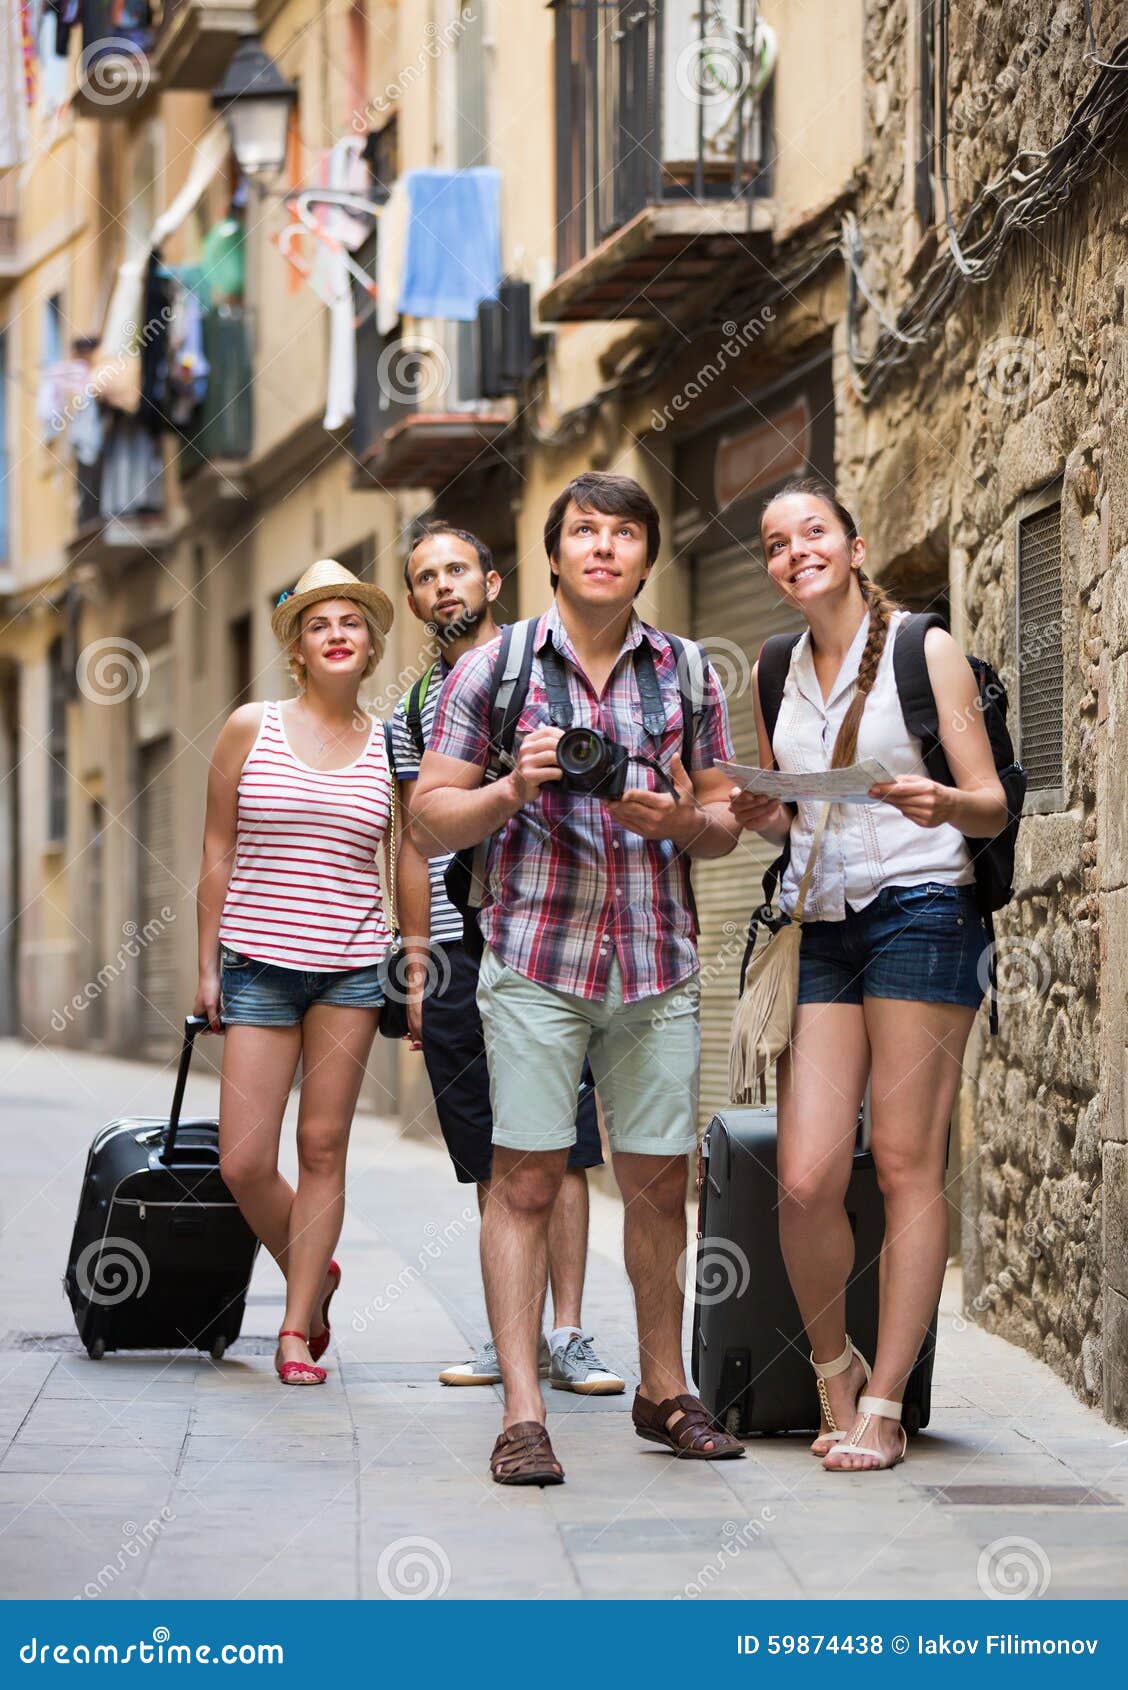 Группа европейских туристов хочет познакомиться с природой. Туристы в городе. Группа туристов. Европейские туристы. Городские туристы летом.